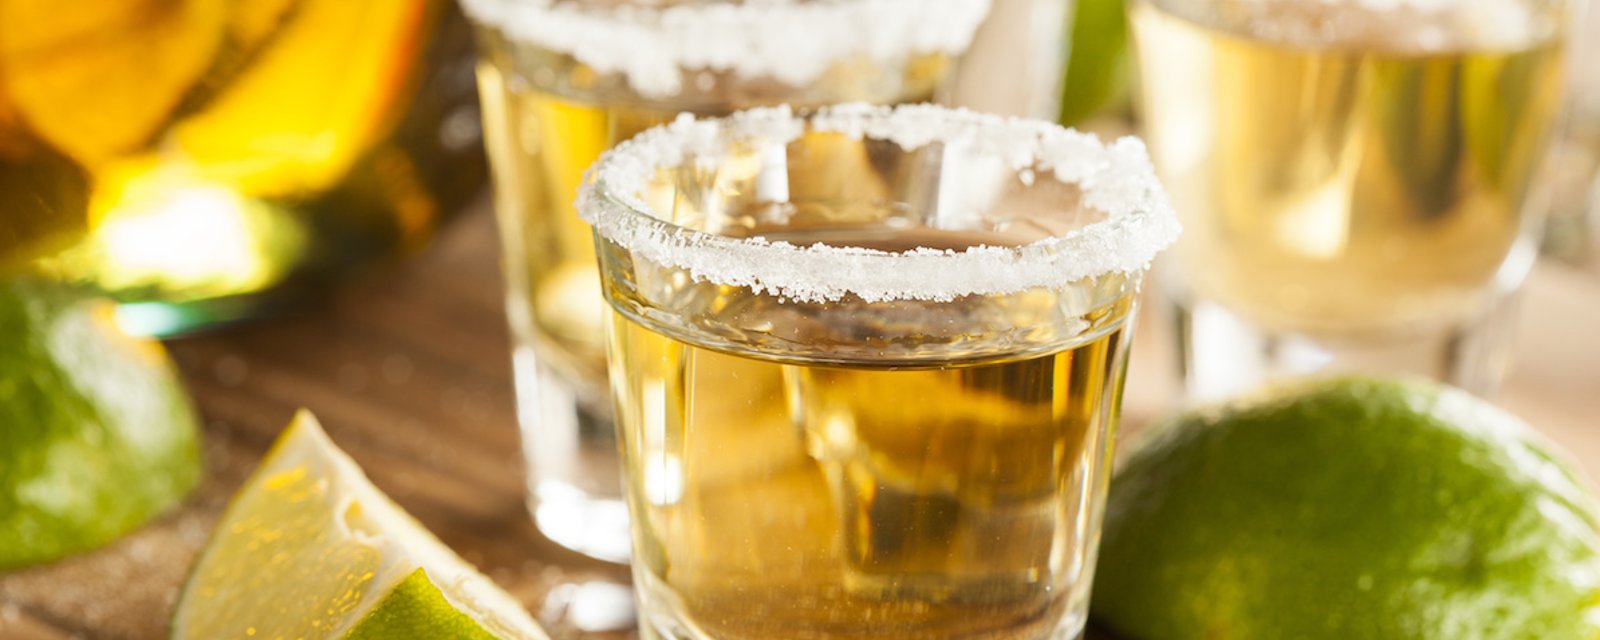 Pour perdre du poids, vous devriez peut-être vous mettre... à la tequila!